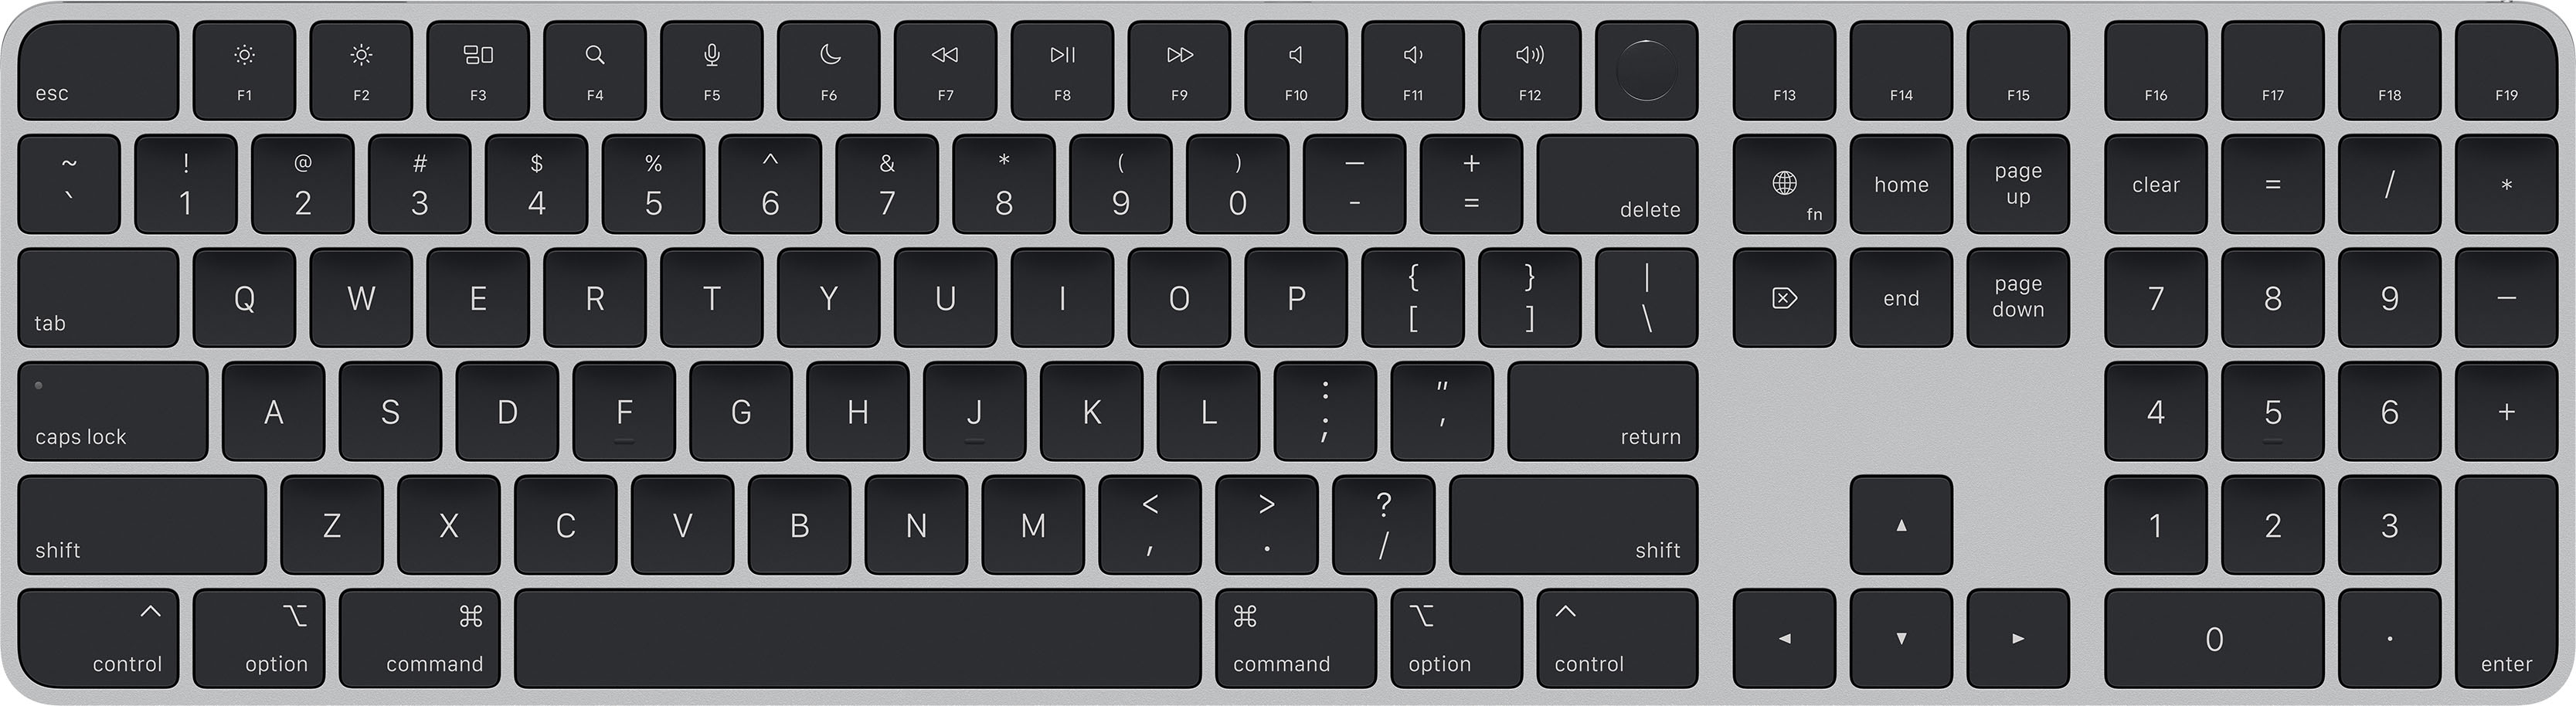 同時購入特典付き  TouchID with Keyboard 【Apple】Magic PC周辺機器